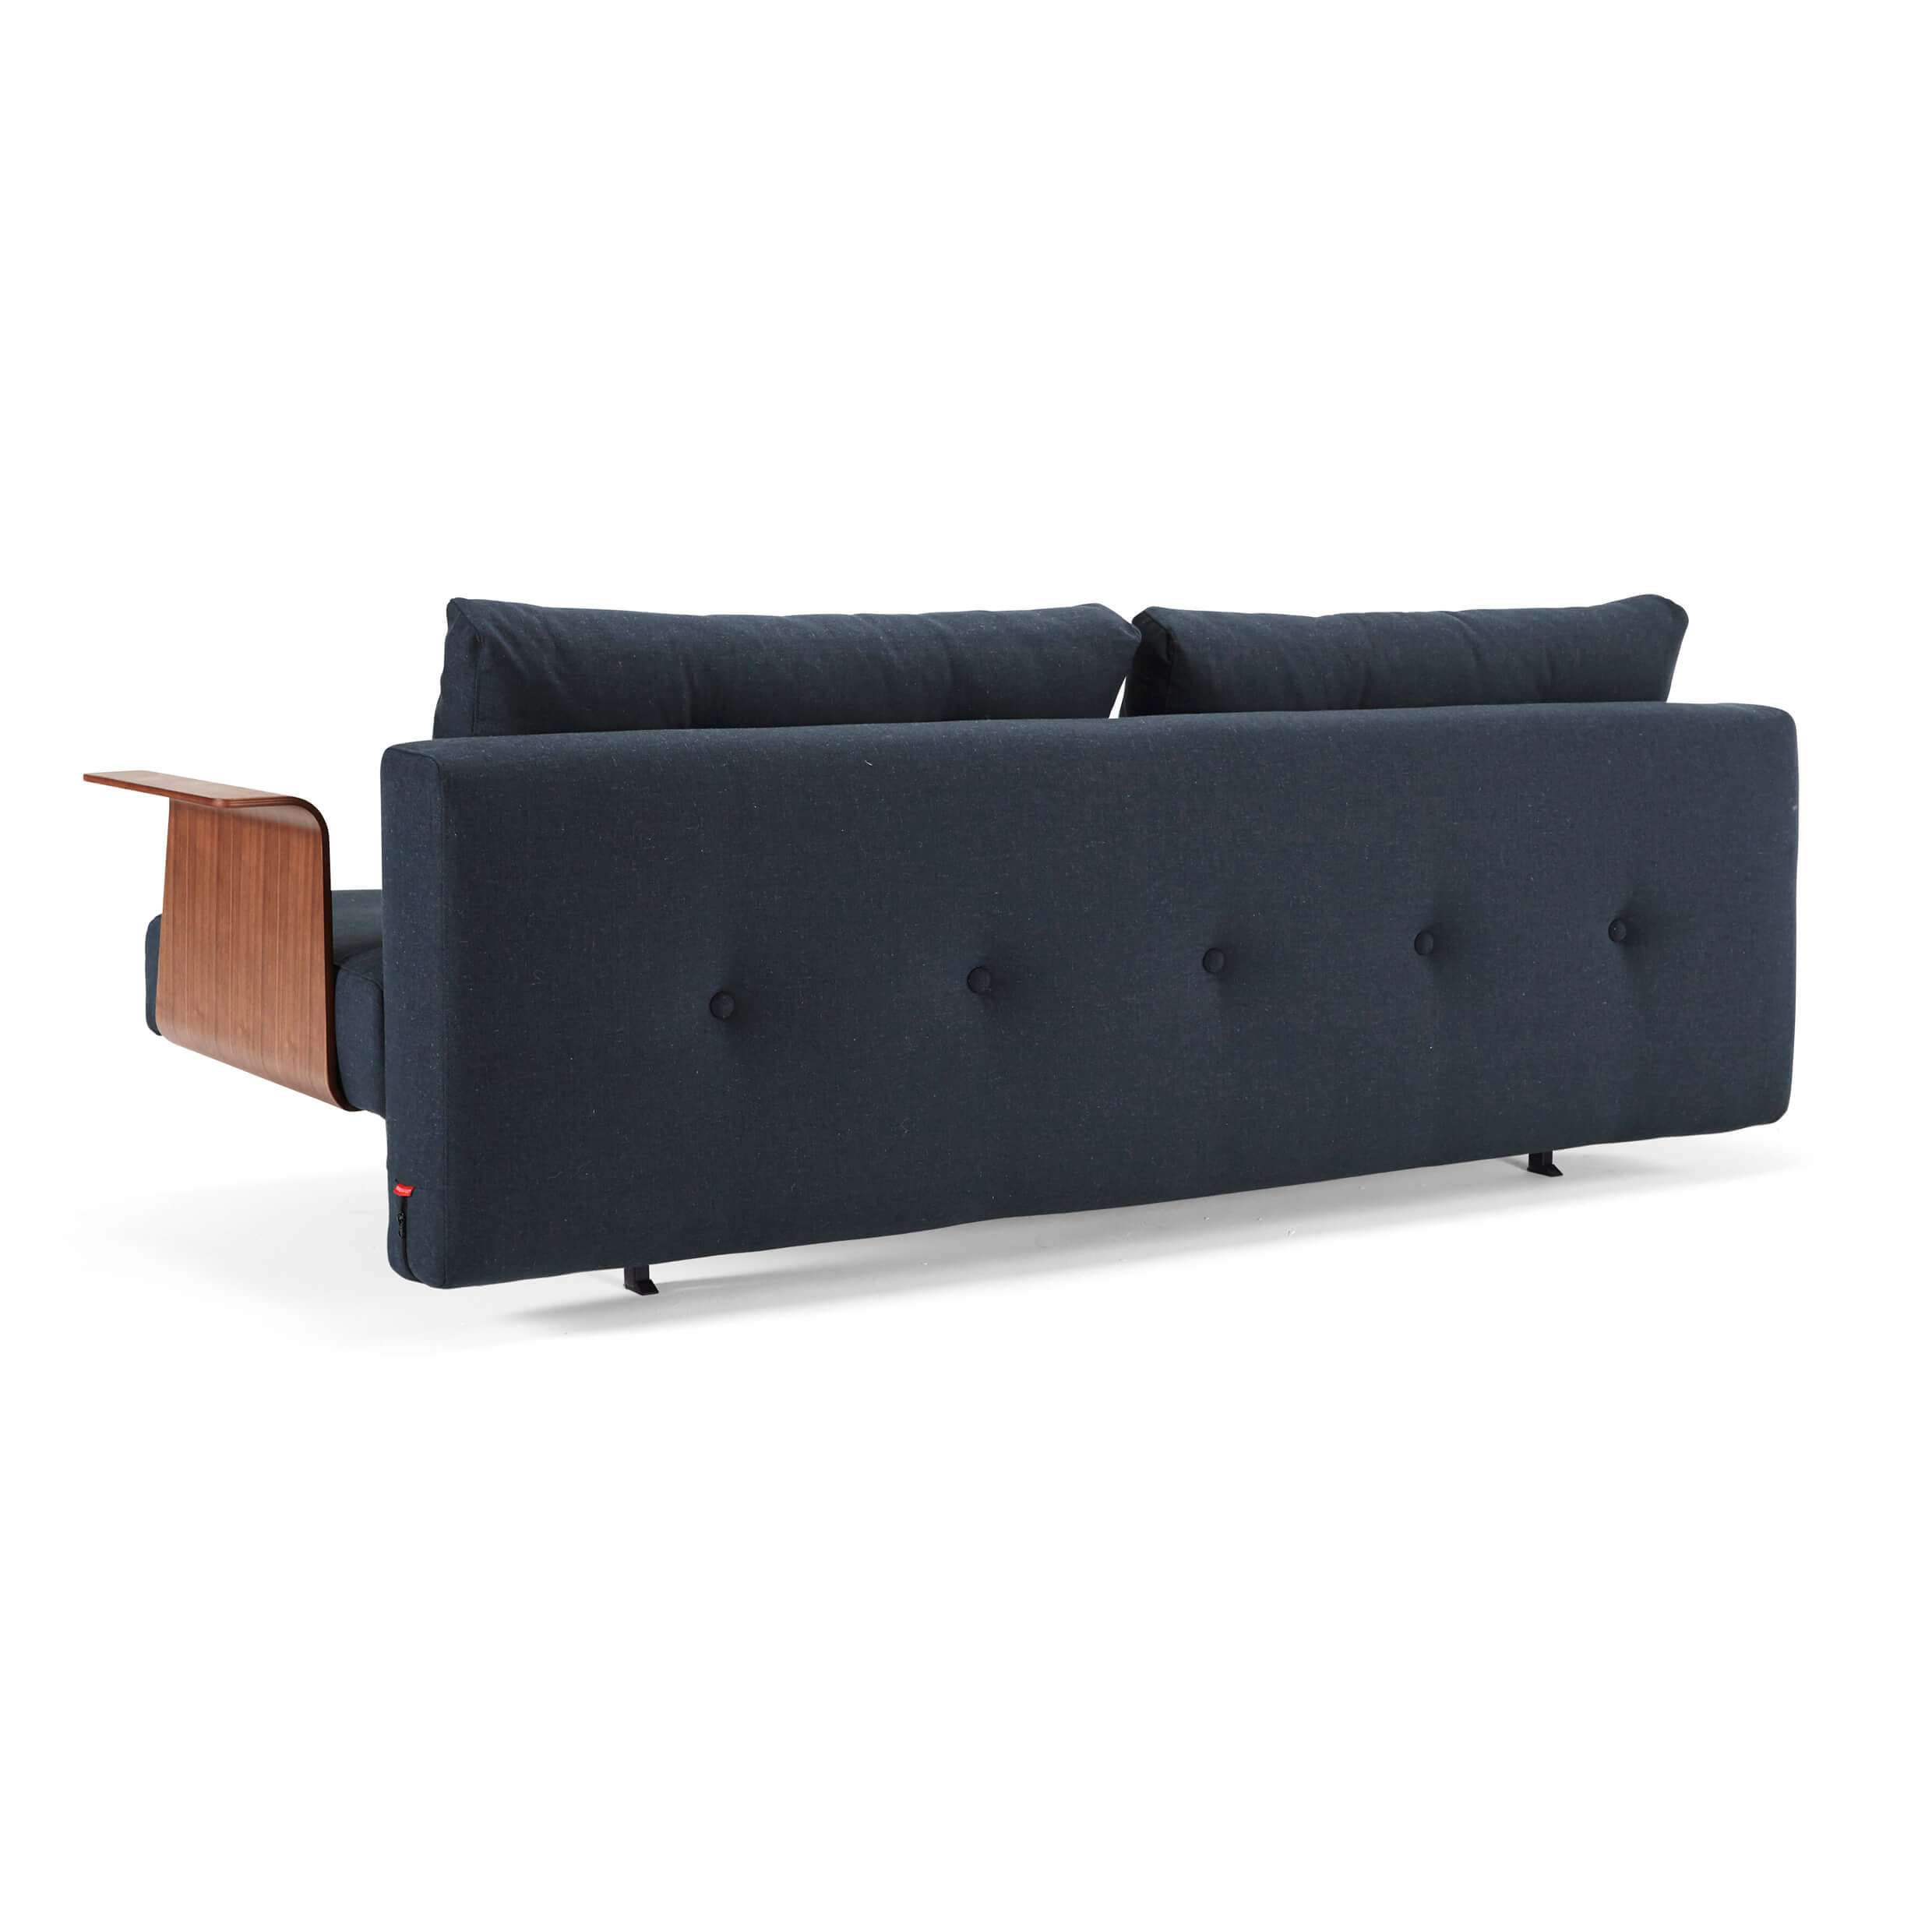 Futon sofa sleeper rear view